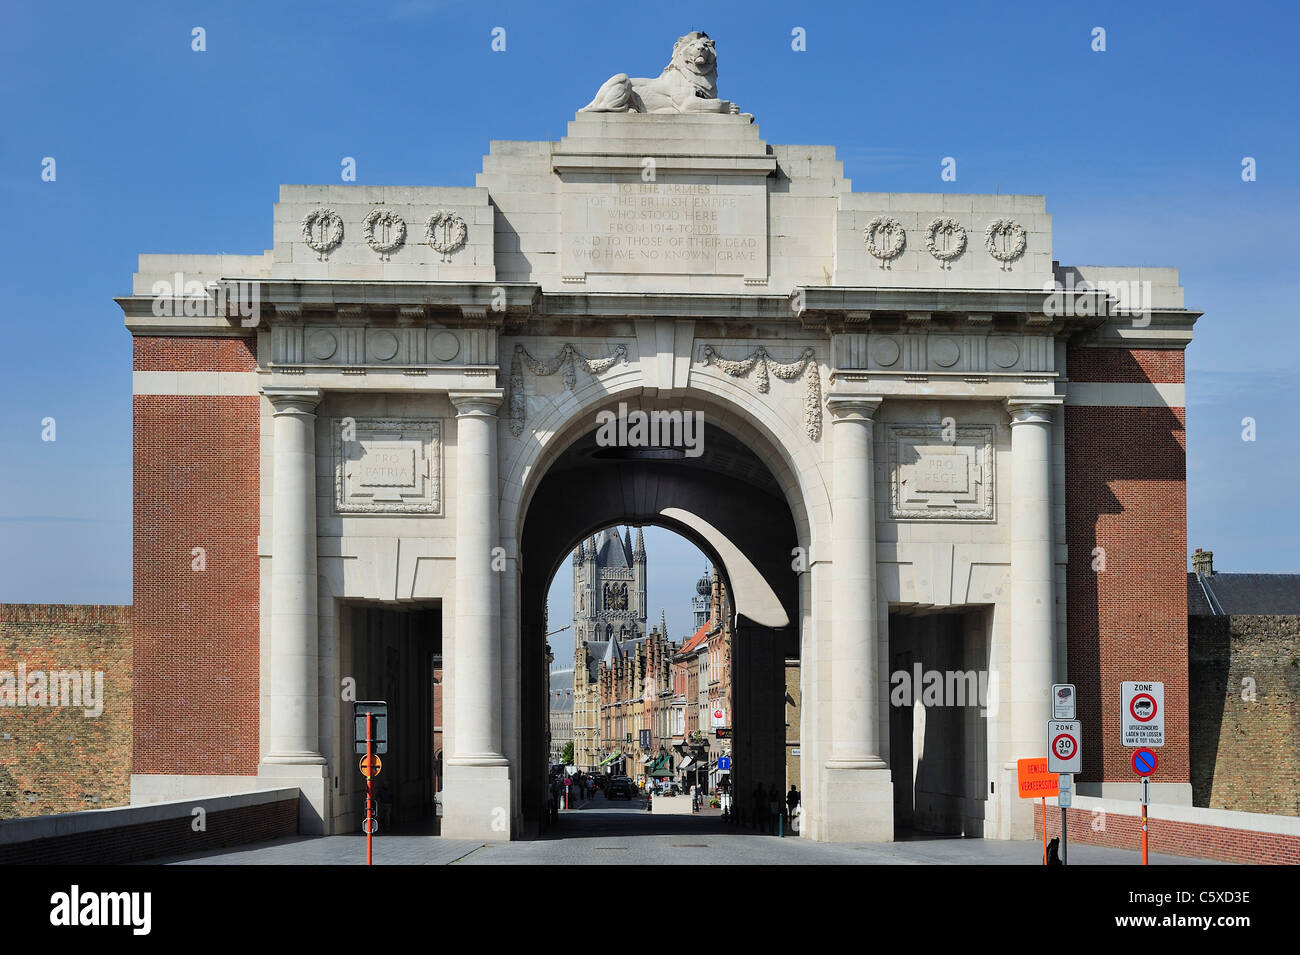 Menin Gate Memorial auf die fehlende in Gedenken an britischen und Commonwealth-Soldaten des ersten Weltkrieges, Ypern, Belgien Stockfoto